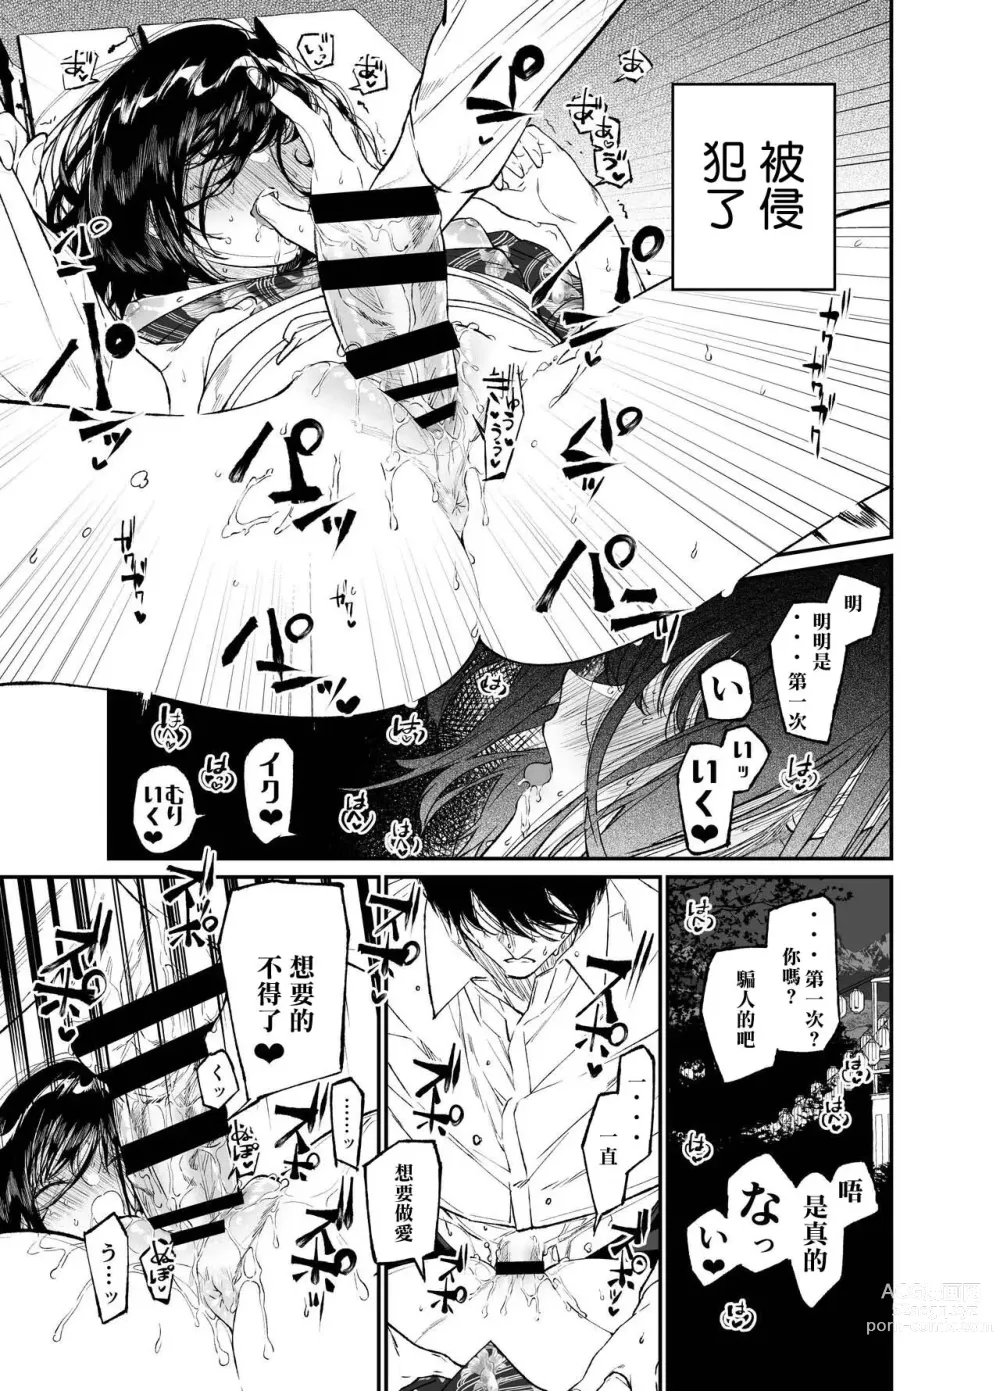 Page 29 of doujinshi Natsu, Shoujo wa Tonde, Hi ni Iru.